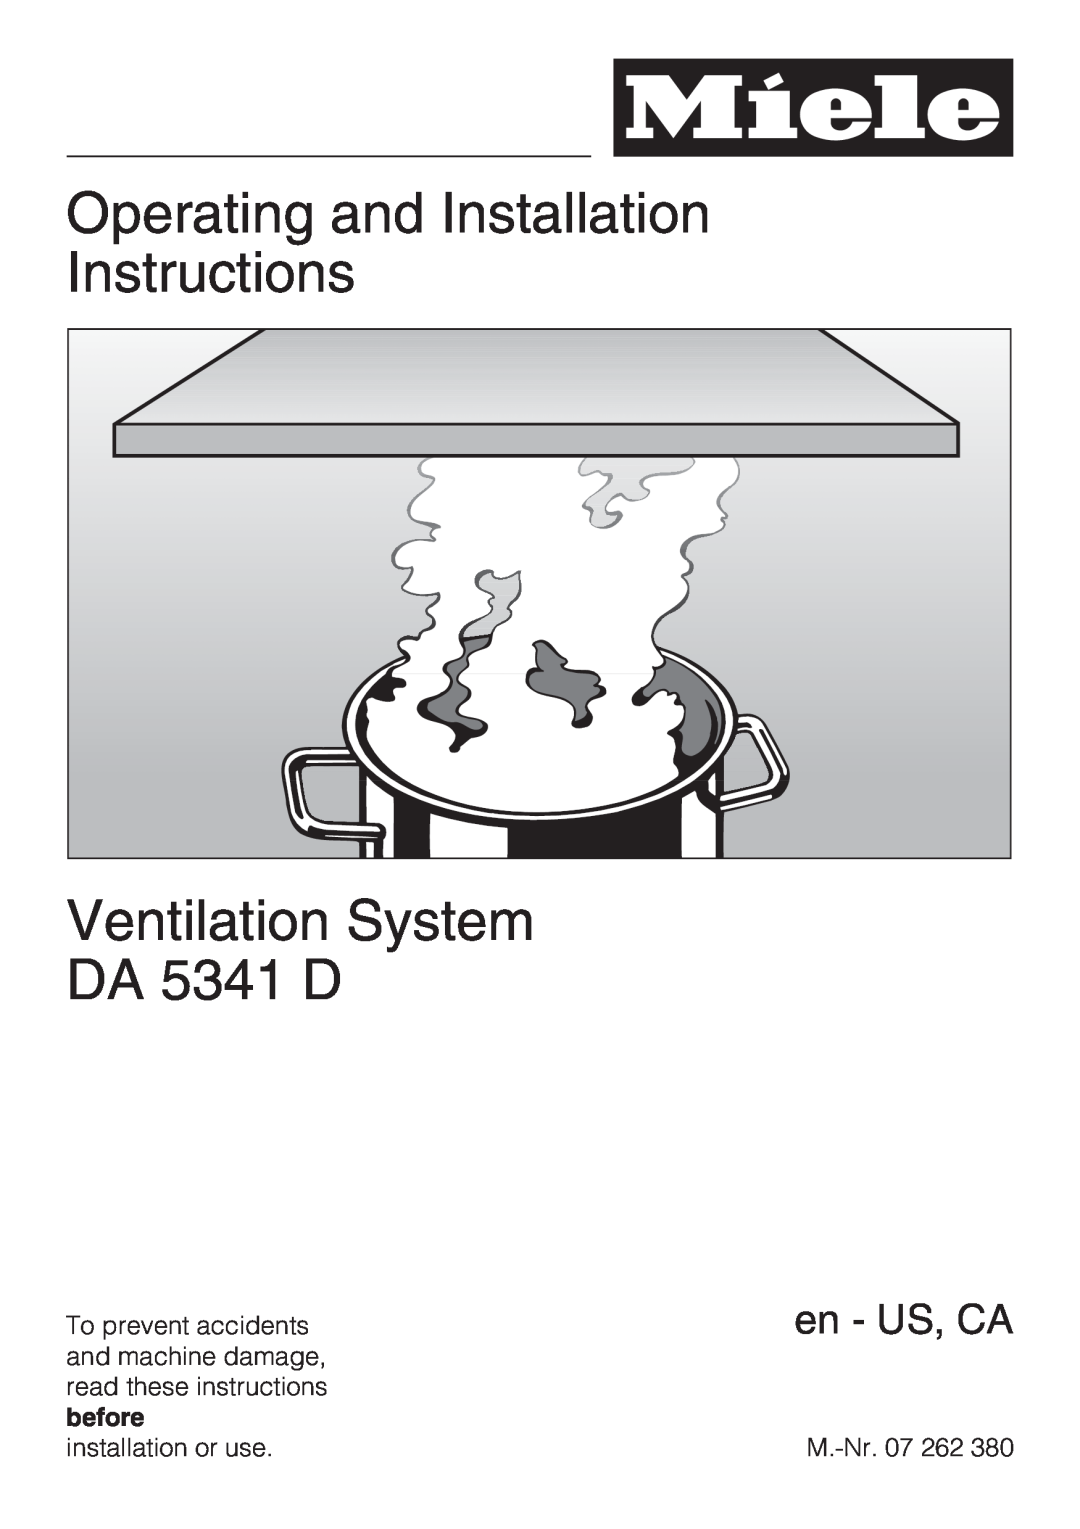 Miele DA5341D installation instructions Operating and Installation Instructions, Ventilation System DA 5341 D, en - US, CA 